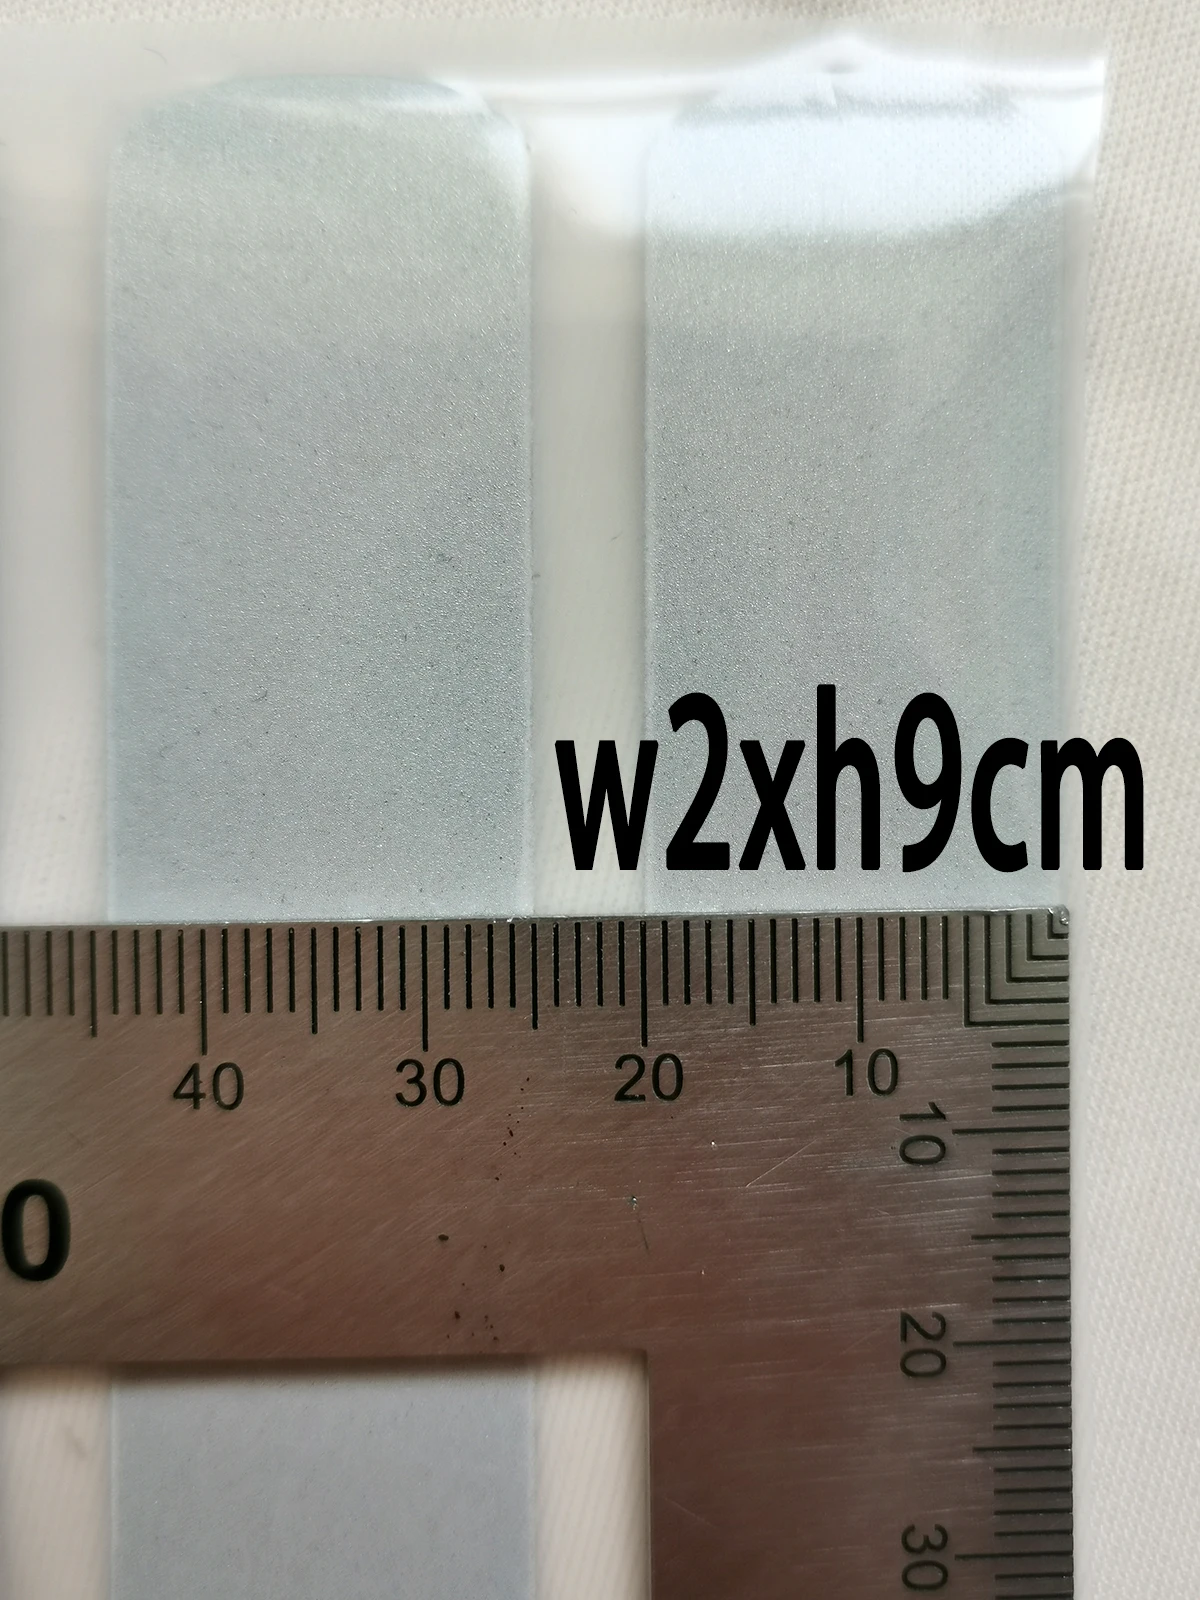 2x9cm Reflecive מדבקות ויניל העברת חום בהיר כסף לוגו של ברזל על בגדים מותאמים אישית דפוסי - 2